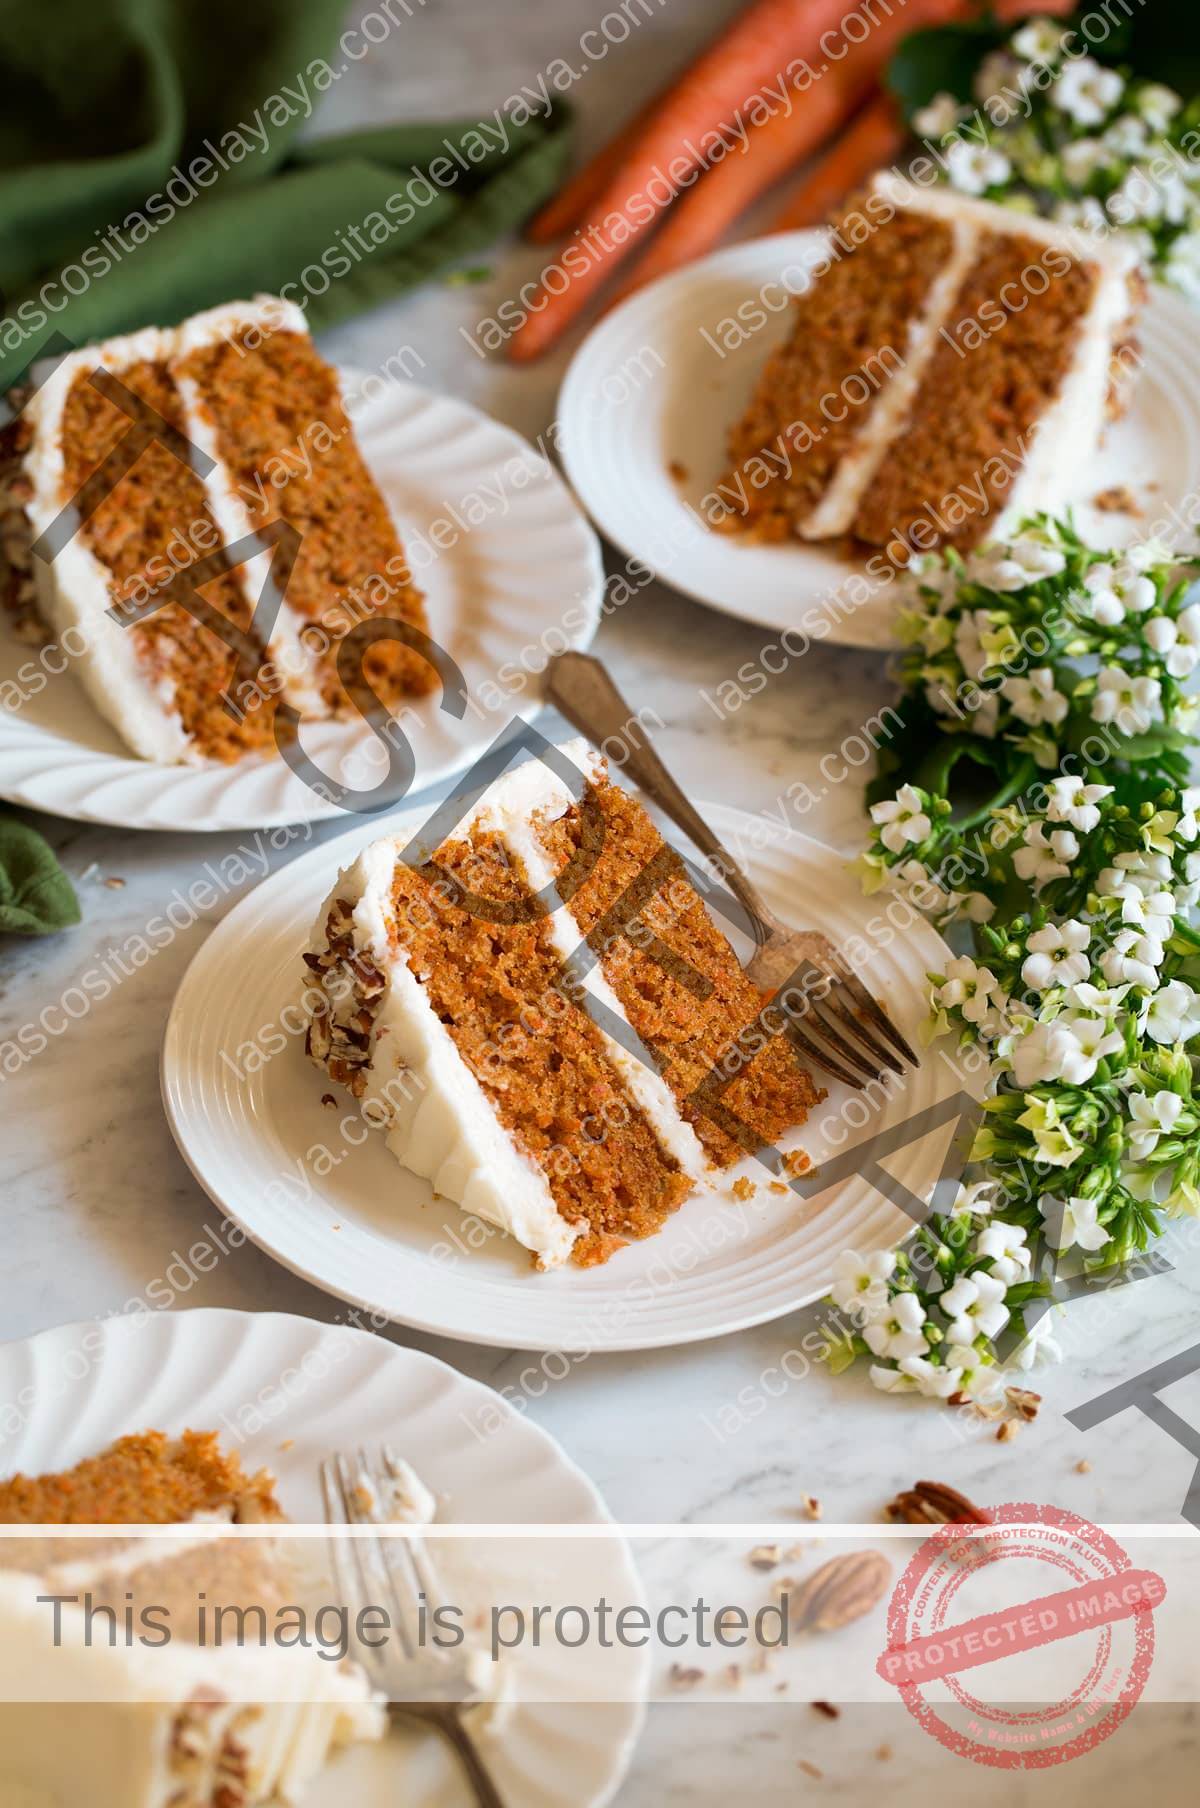 Quatro fatias de bolo de cenoura mostradas em pratos de sobremesa recortados brancos com flores e cenouras ao redor dos pratos.